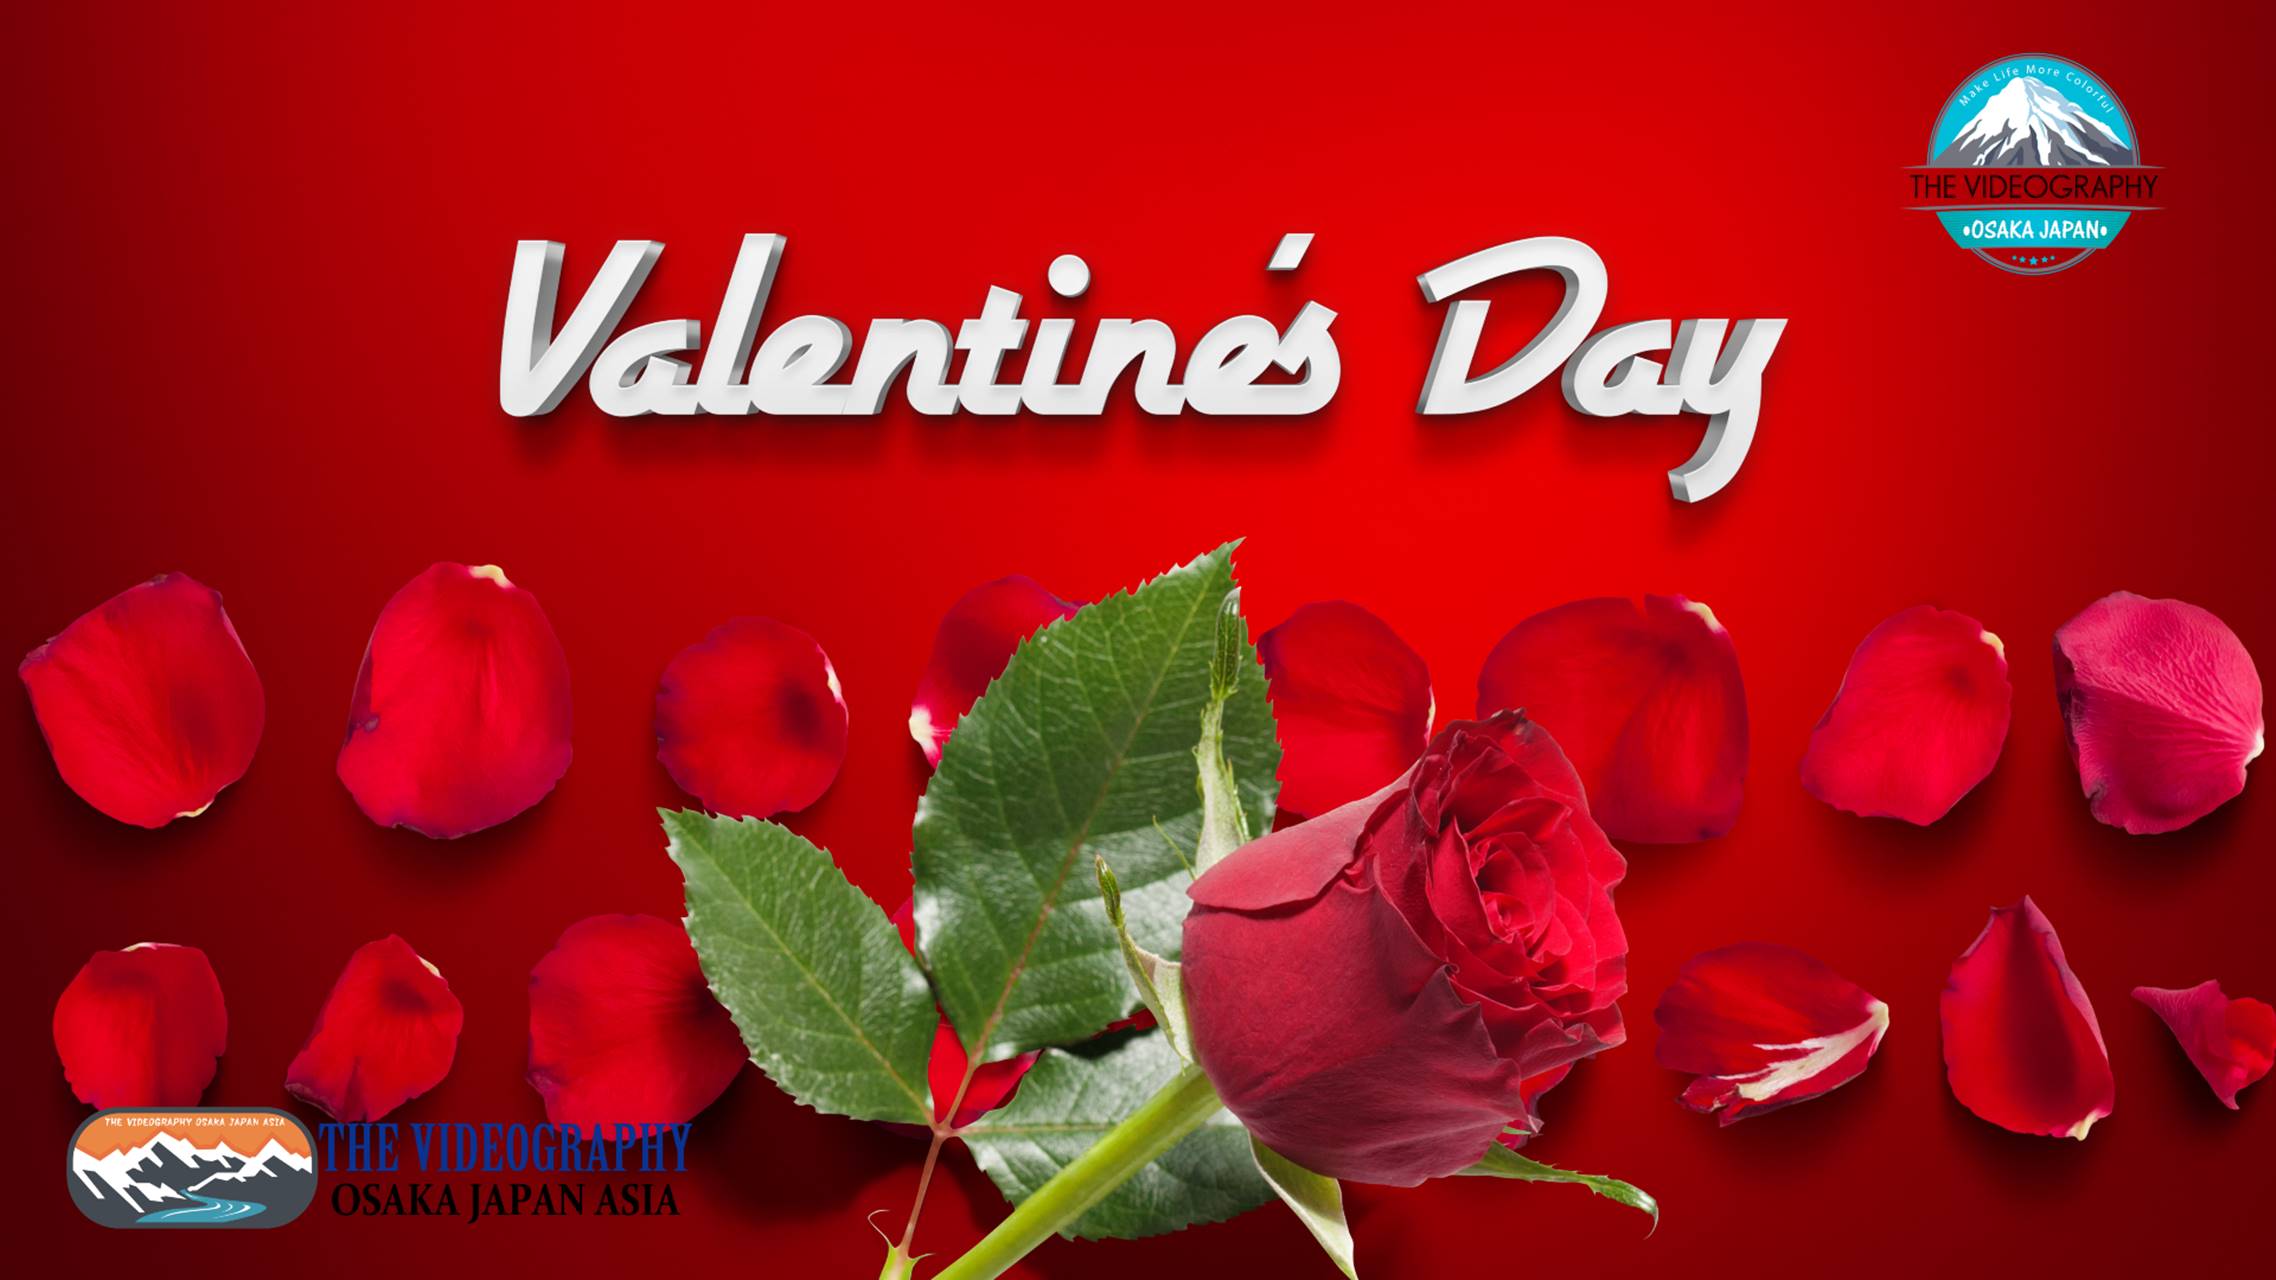 Happy Valentine’s Day! ハッピー・バレンタイン・デーに最適なバラの花びら舞うおしゃれでポップな動画。人生の映像遺産 一瞬も 一生も 未来永劫 美しさが永続する 最高品質の動画です。結婚式やパーティ バレンタイン プロポーズに花を添えるラグジュアリームービー